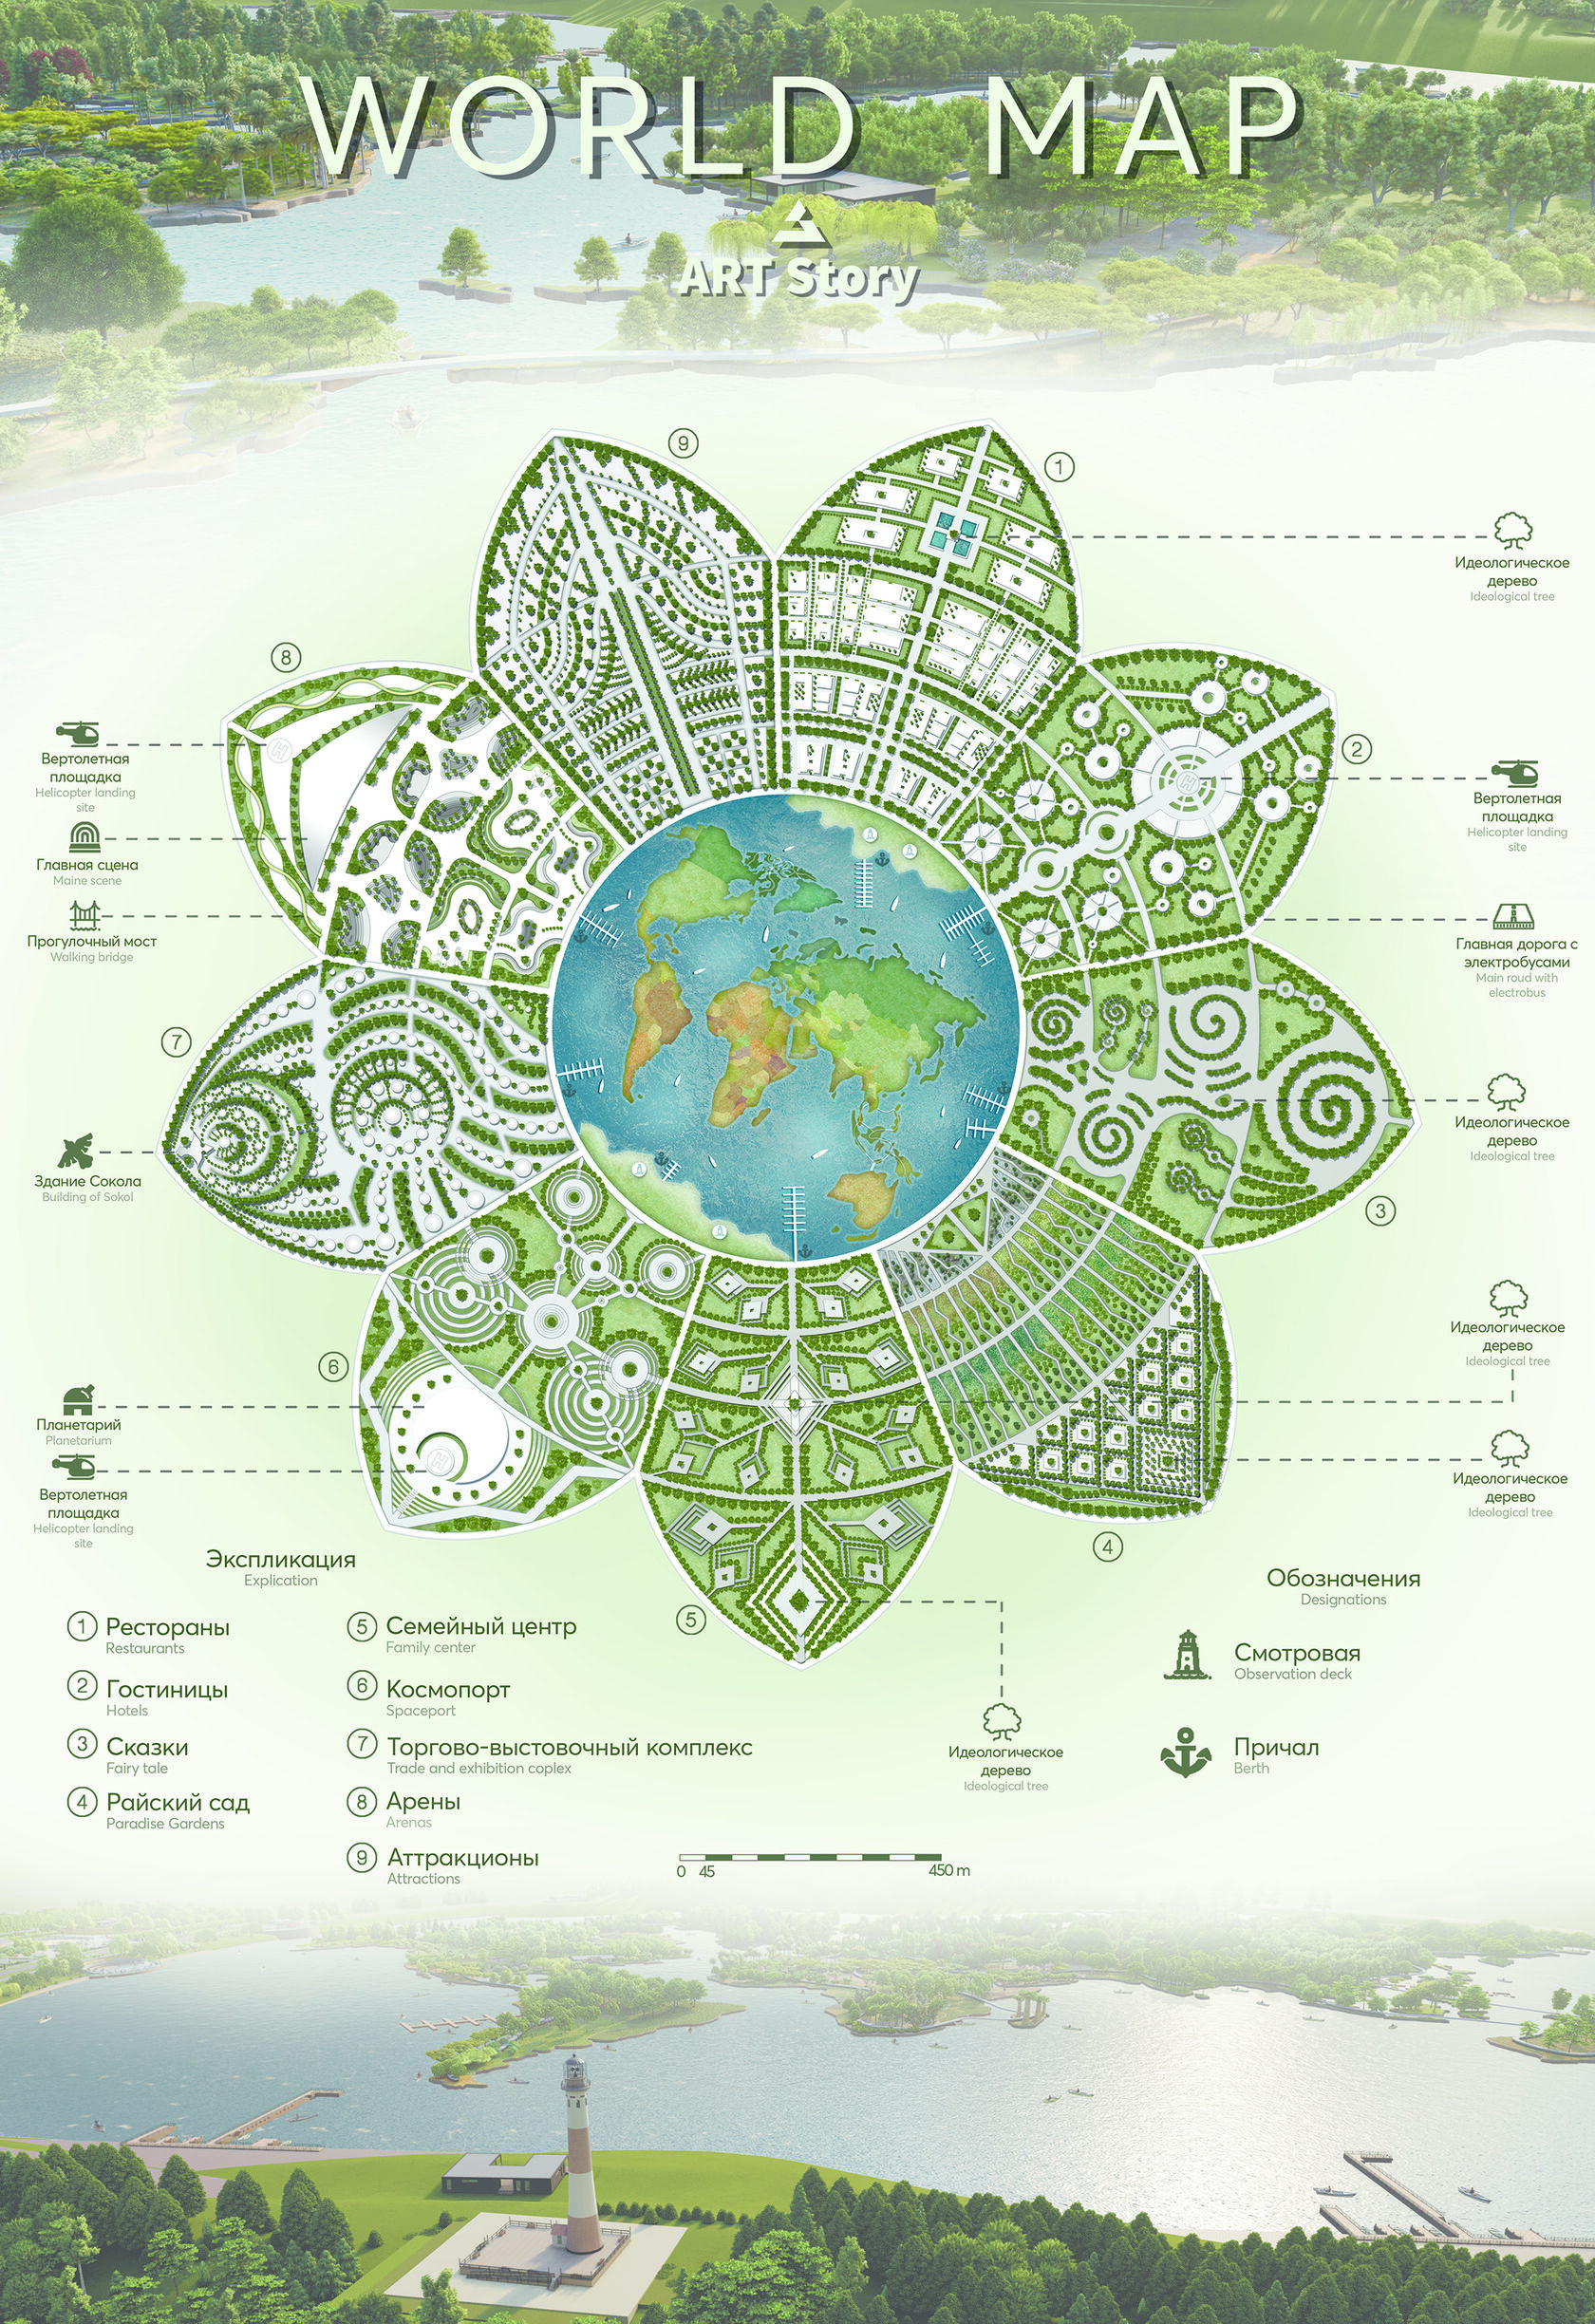 Ландшафтный проект на международном конкурсе Карта Мира